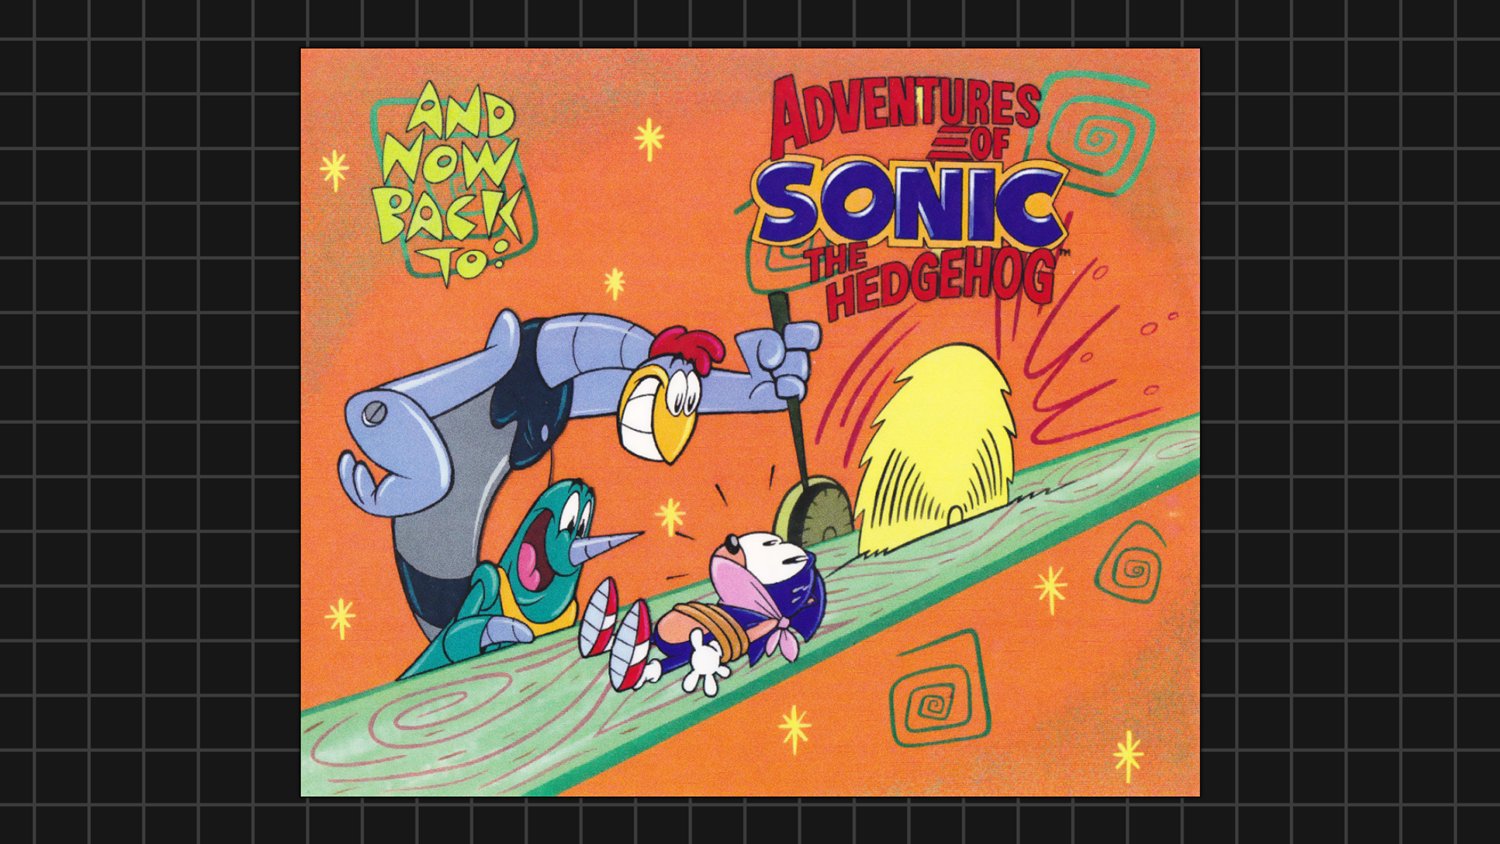 Watch Adventures of Sonic the Hedgehog